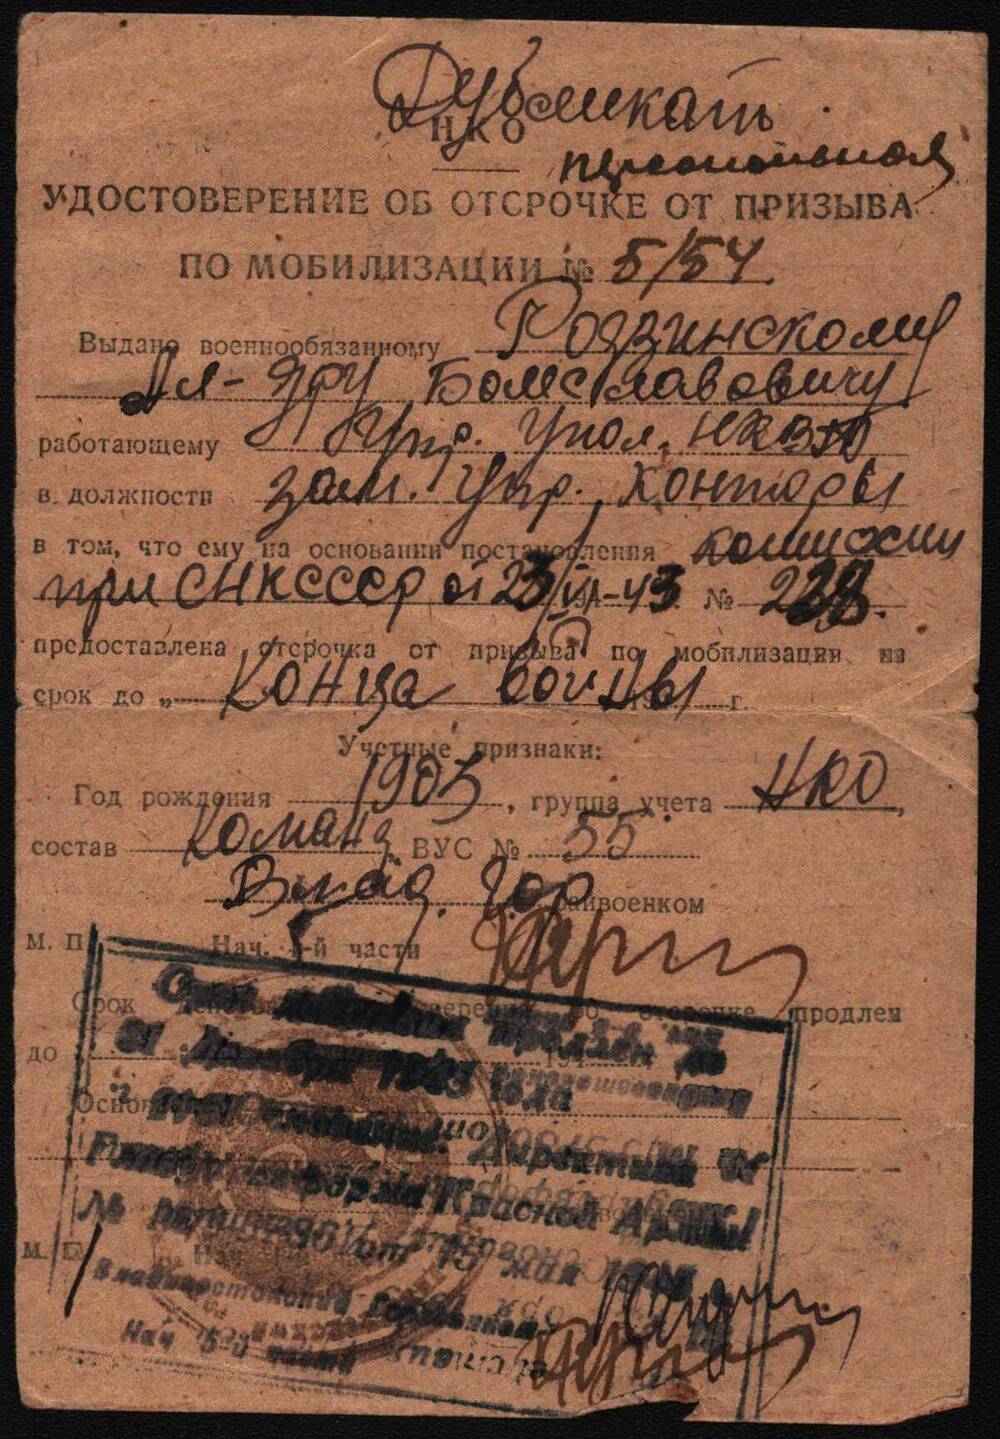 Удостоверение об отсрочке от призыва по мобилизации Радзинского А.Б.